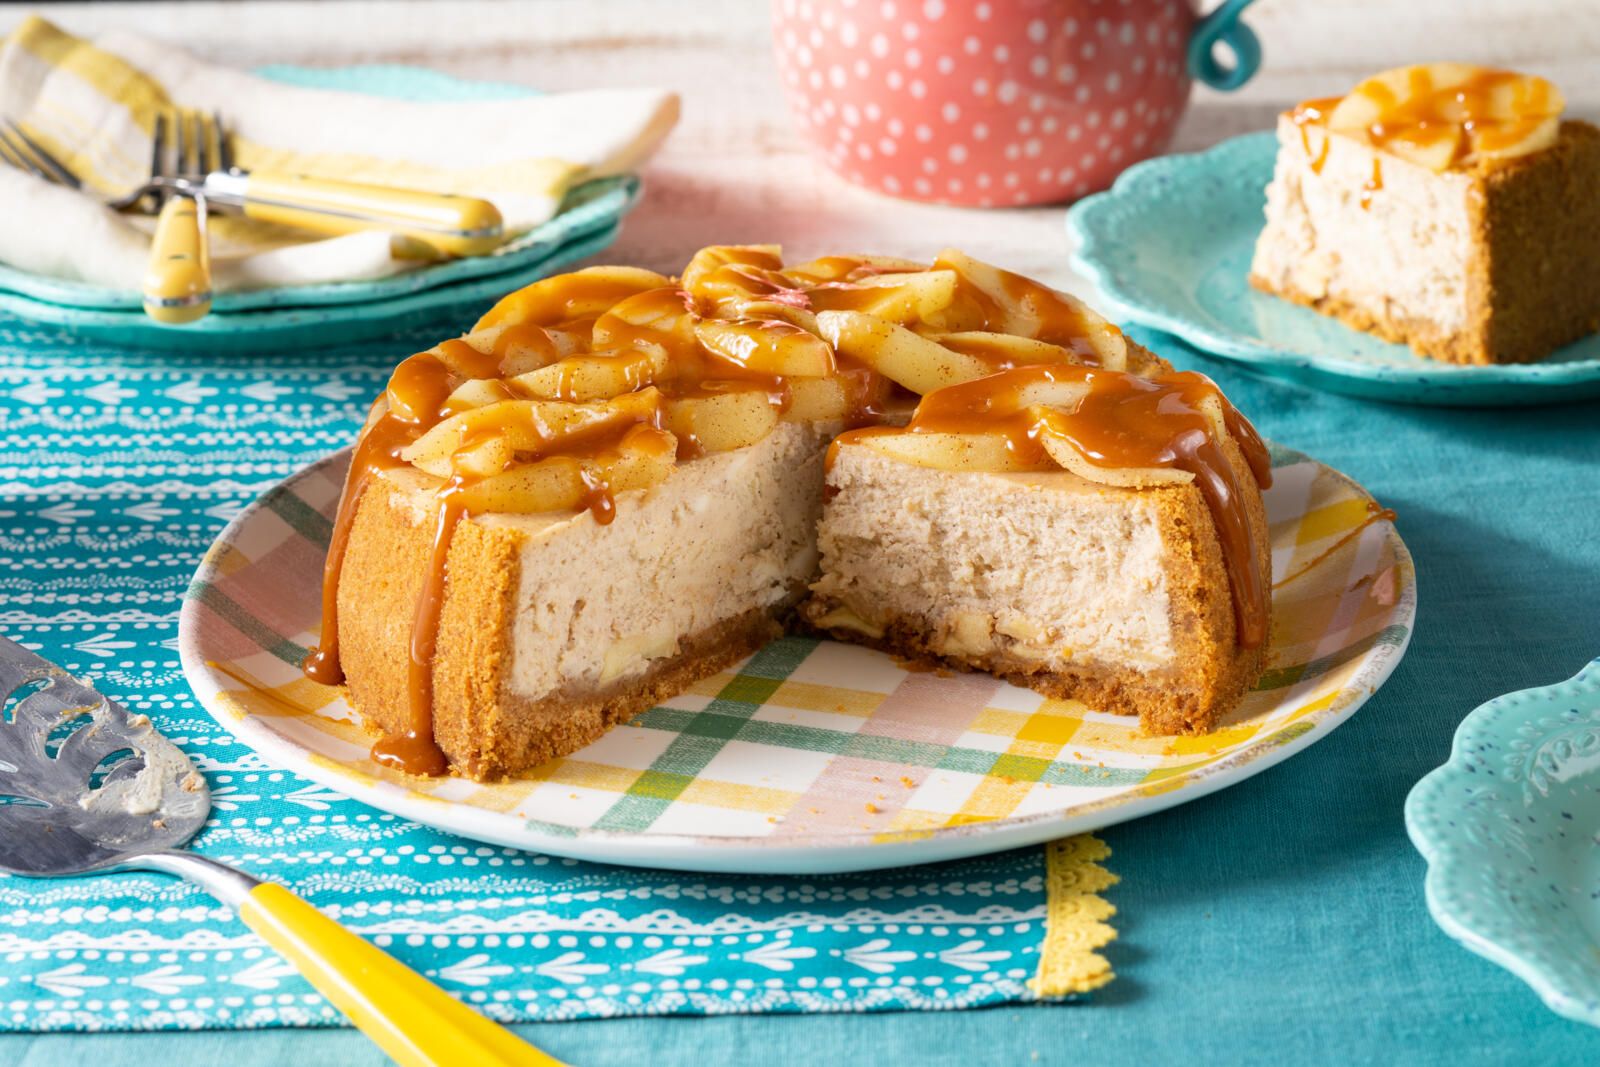 https://hips.hearstapps.com/hmg-prod/images/caramel-apple-cheesecake-recipe-1627527108.jpg